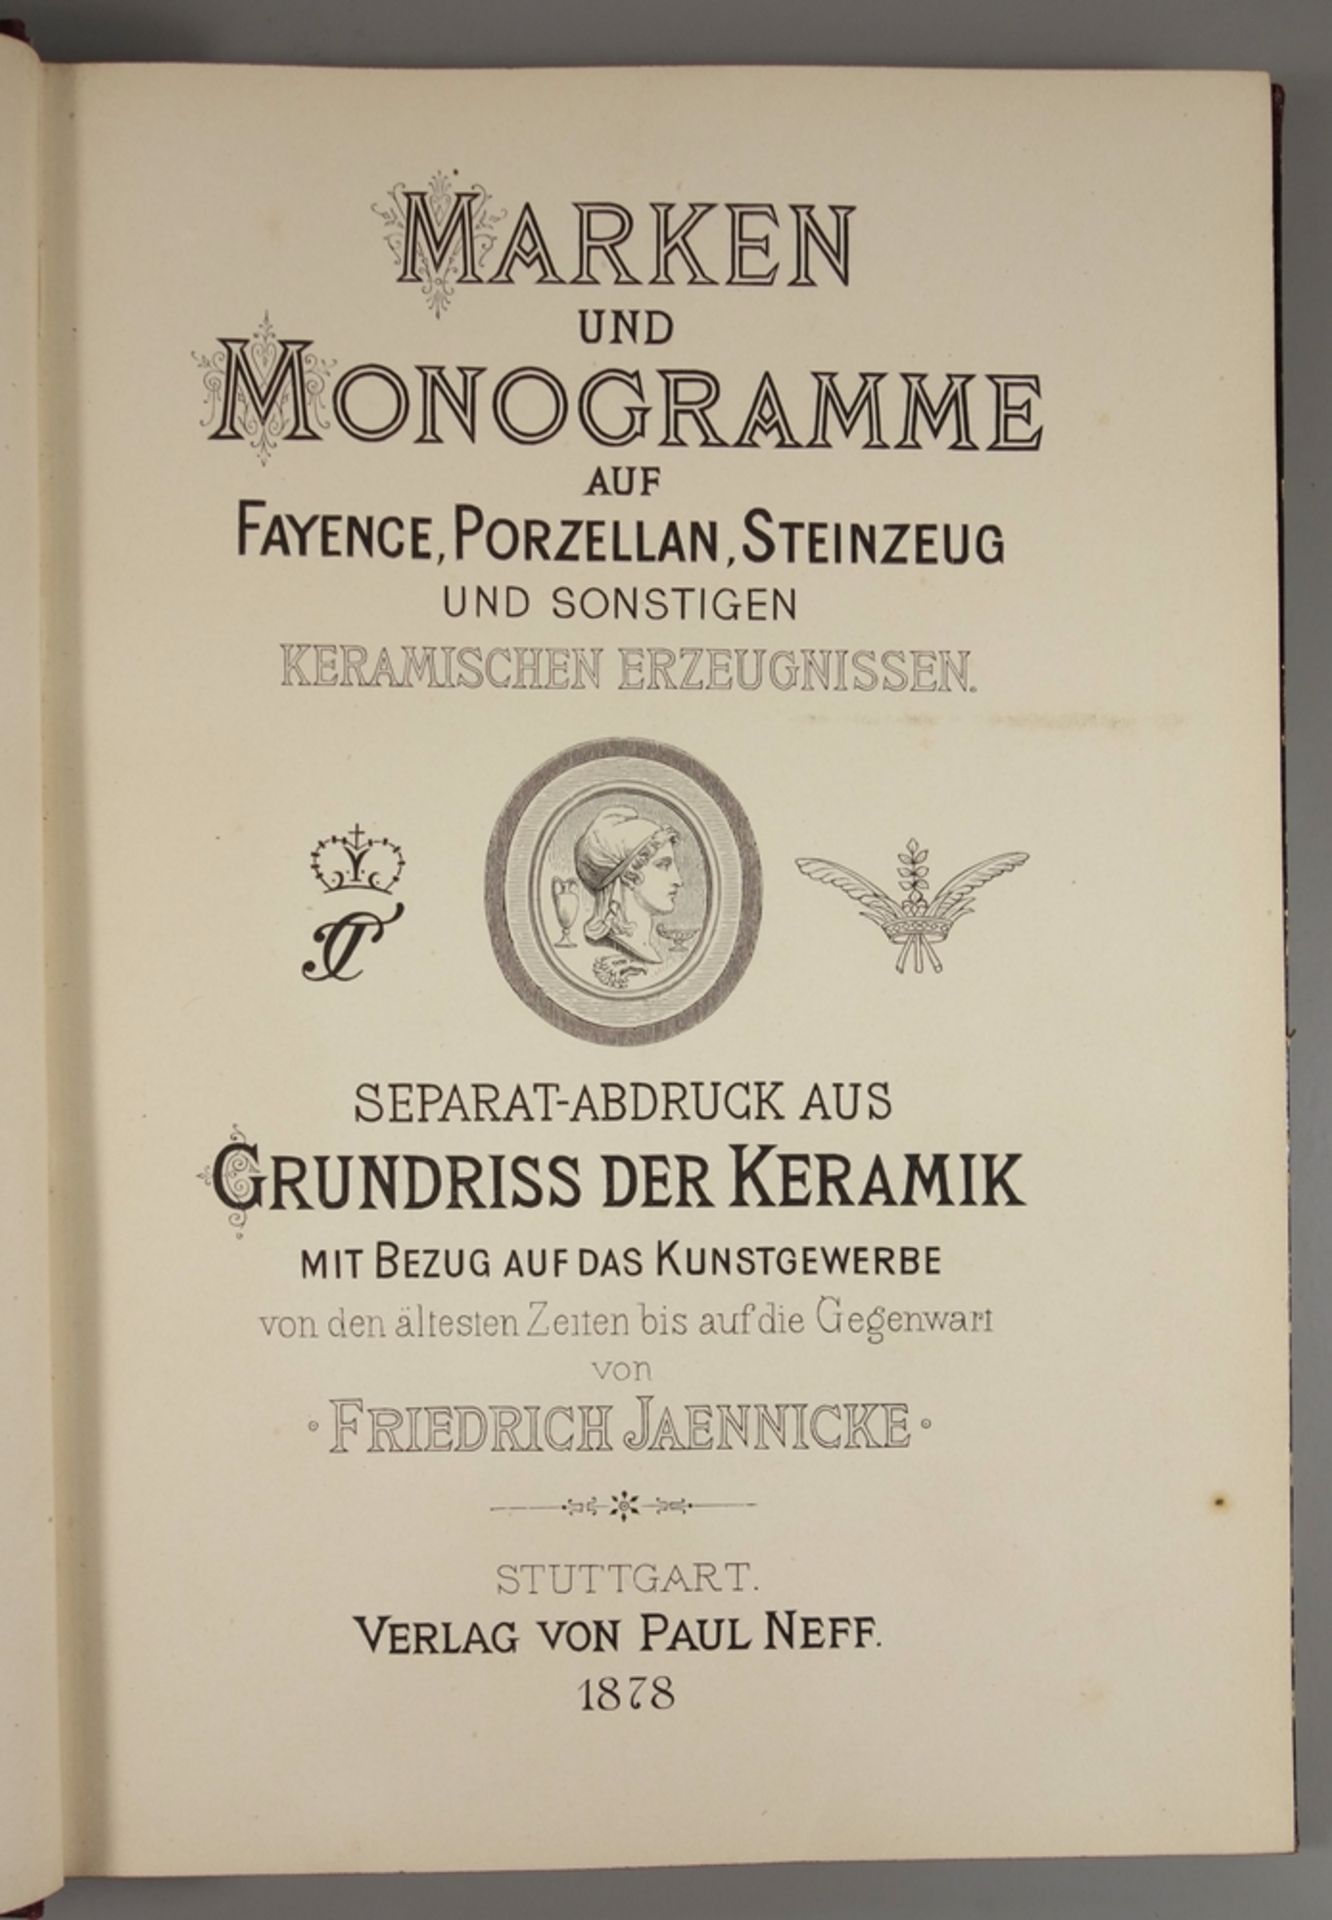 Marken und Monogramme auf Fayence, Porzellan, Steingut und sonstigen Keramischen Erzeugnissen, 1878,